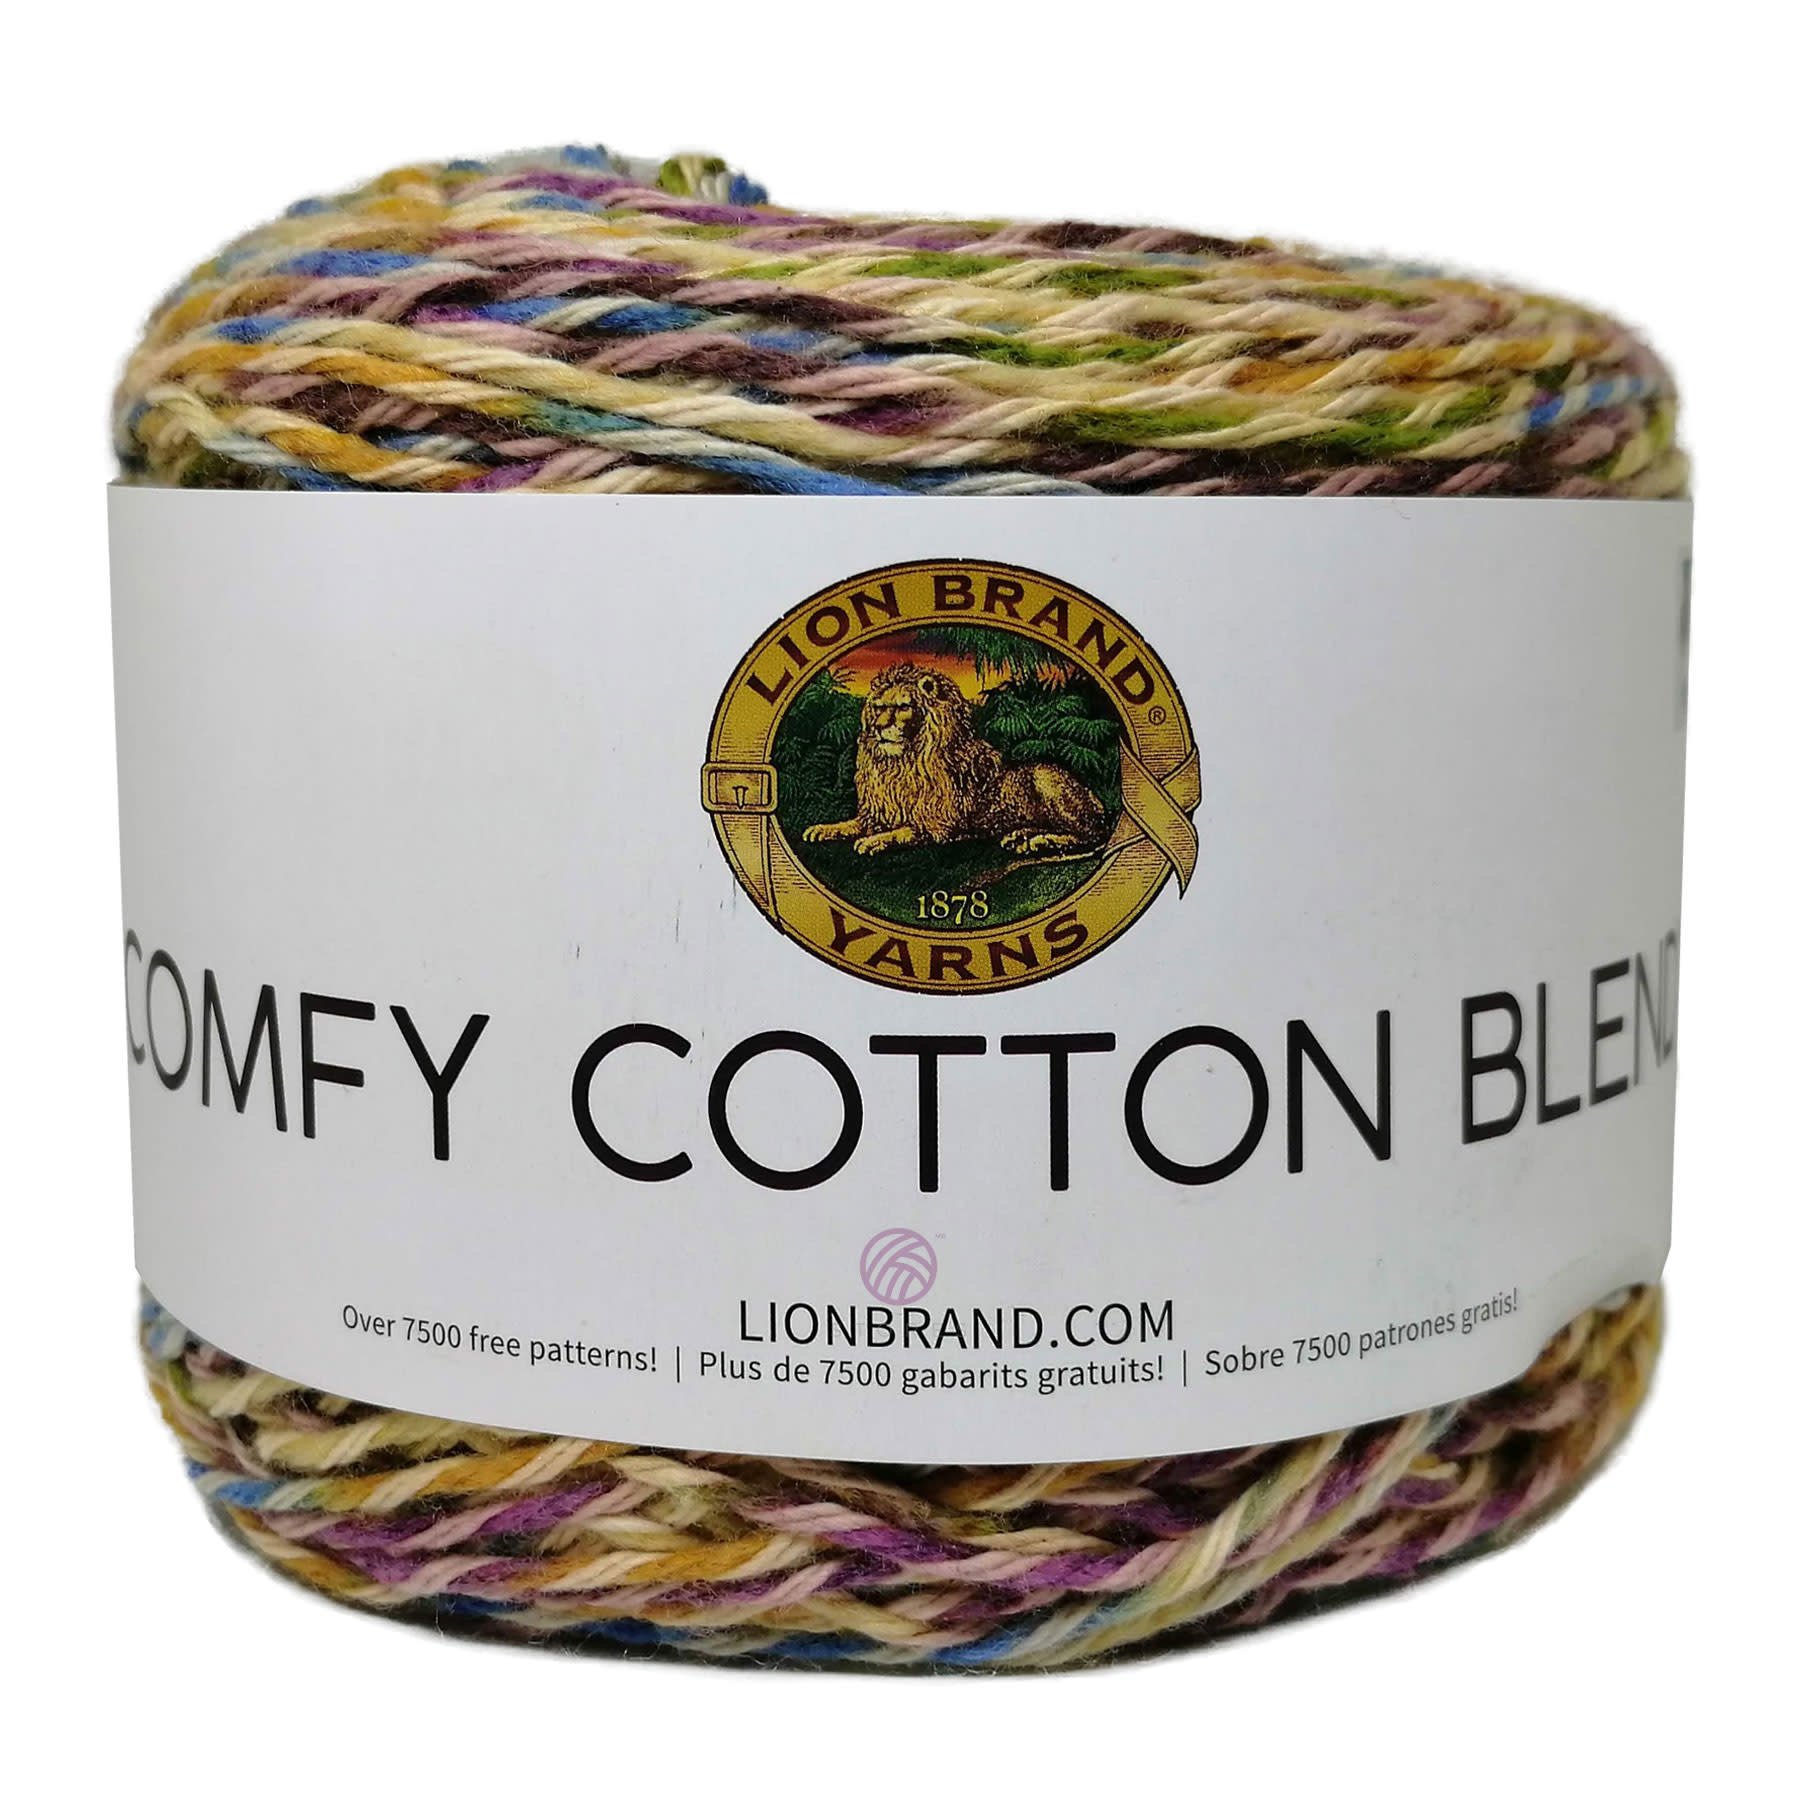 LB Comfy Cotton Blend